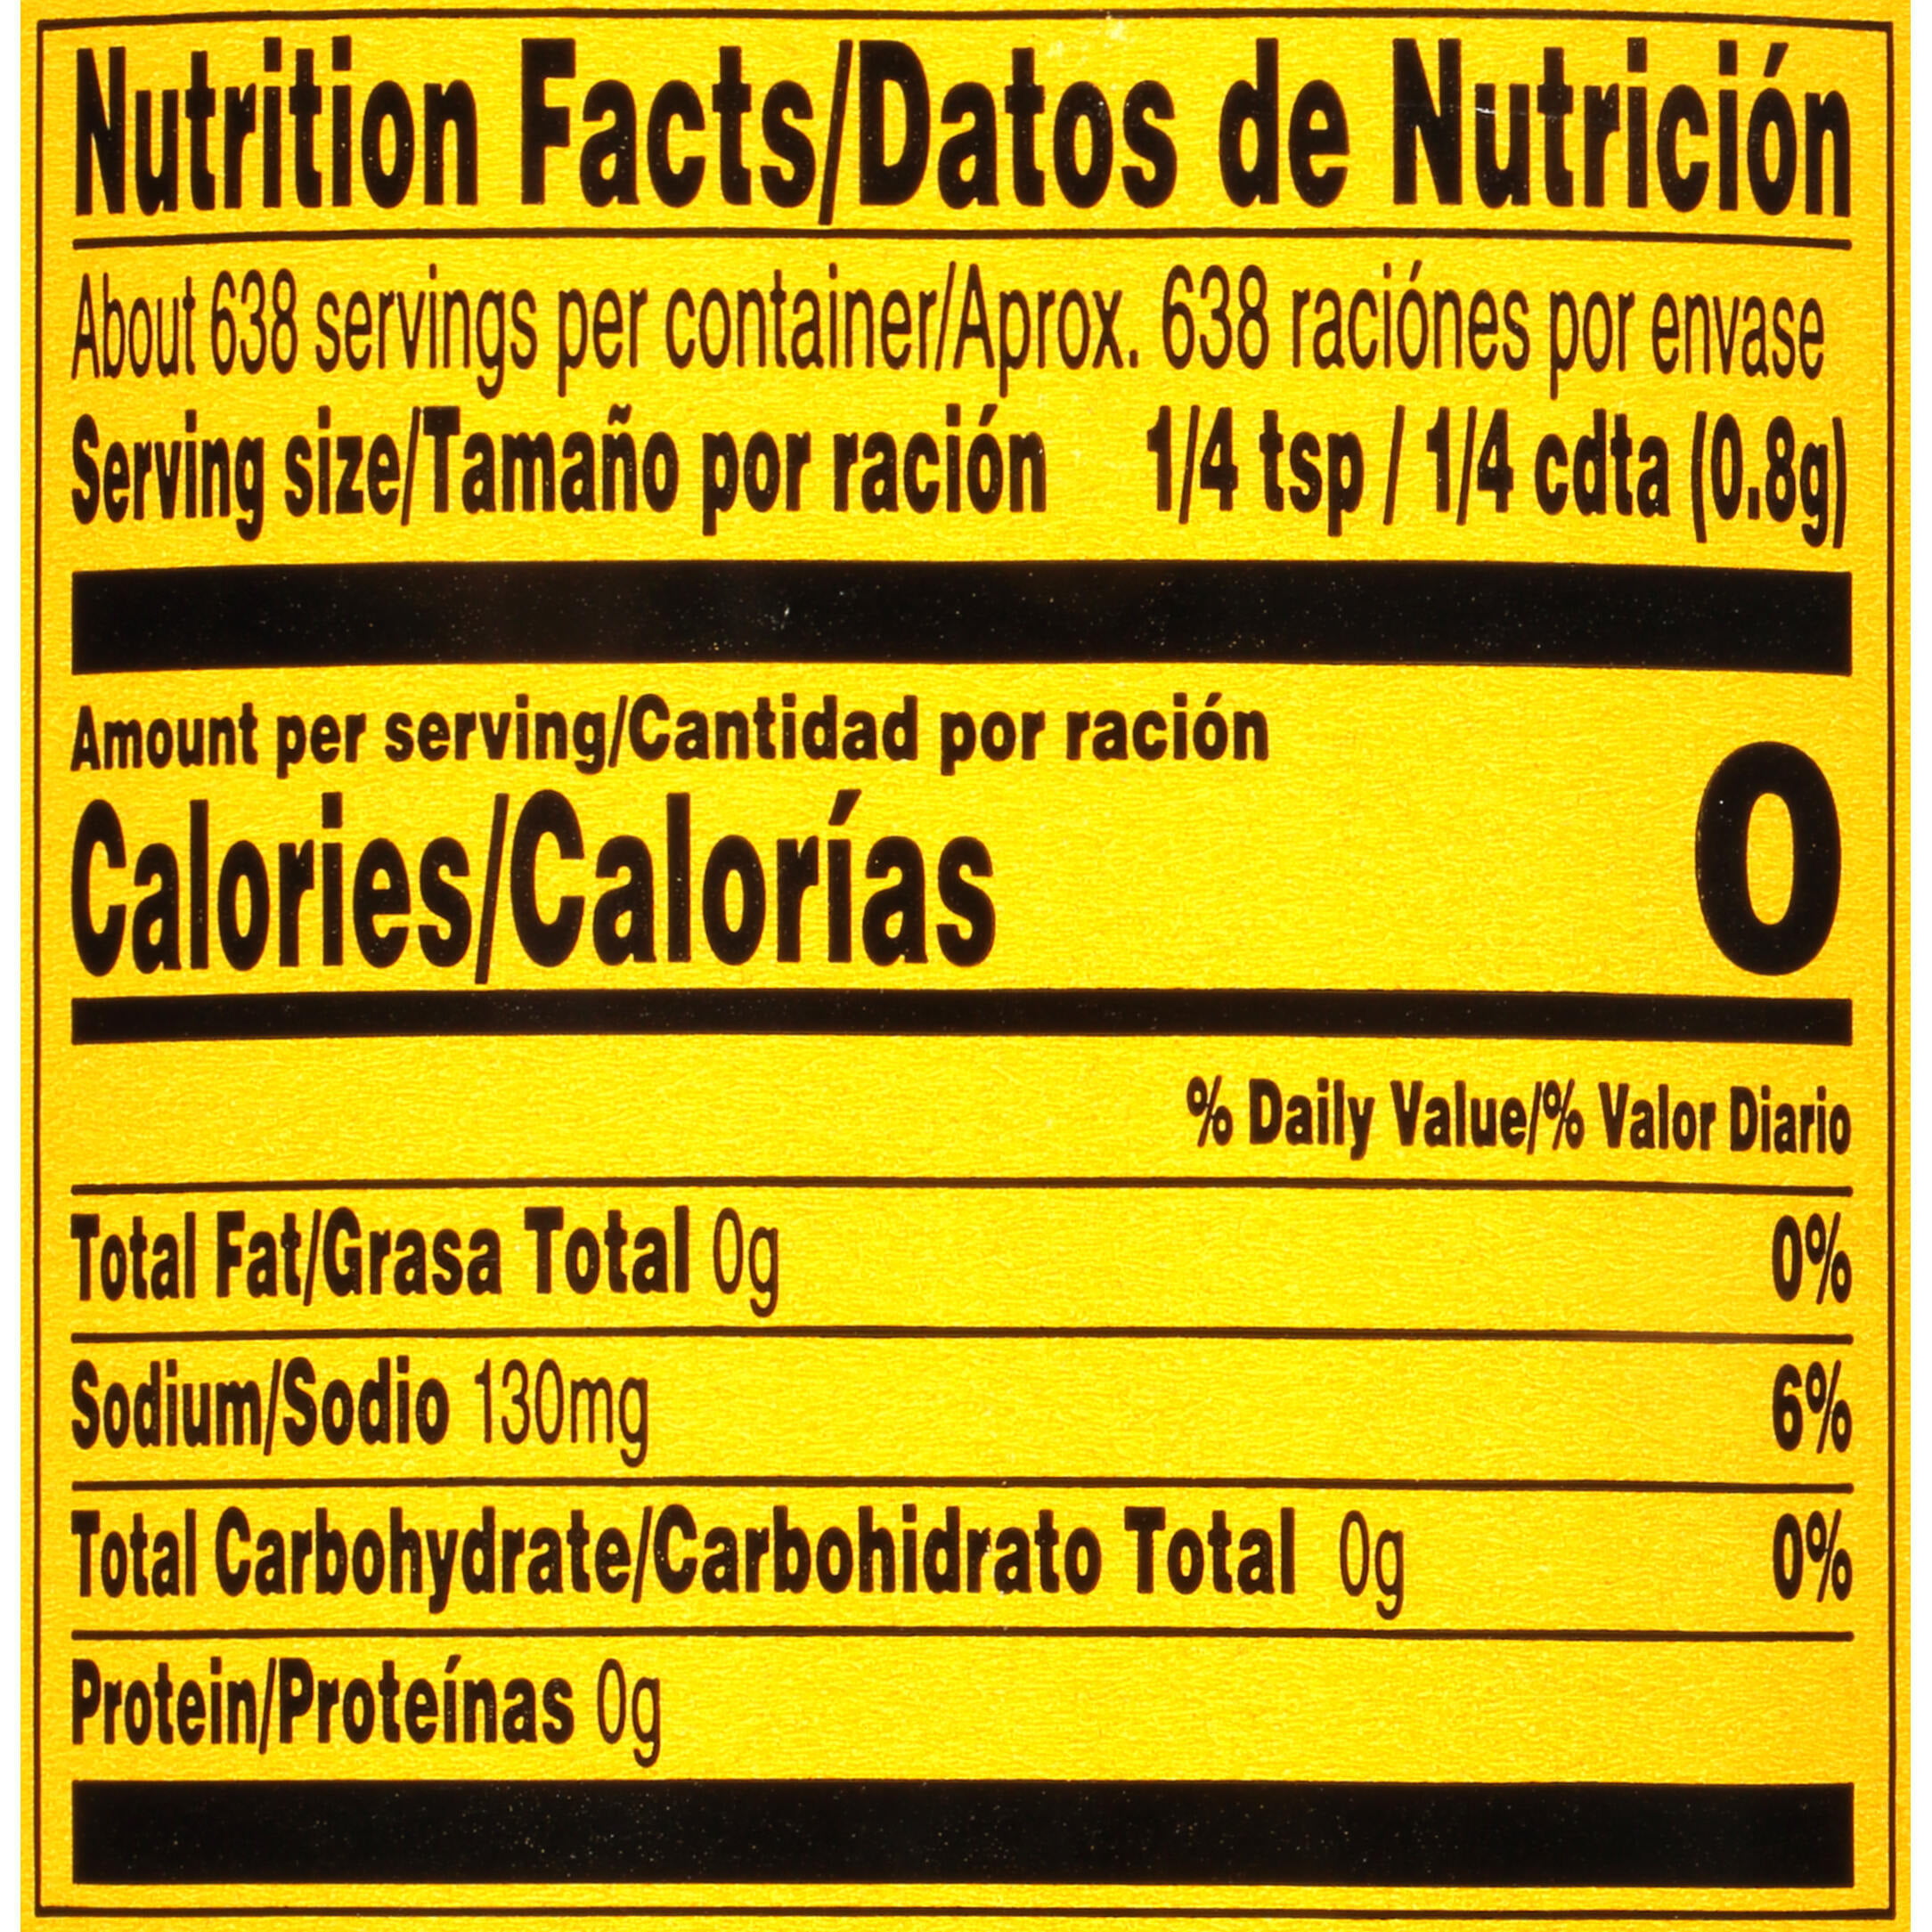 18 Naf Naf Grill Nutrition Facts 